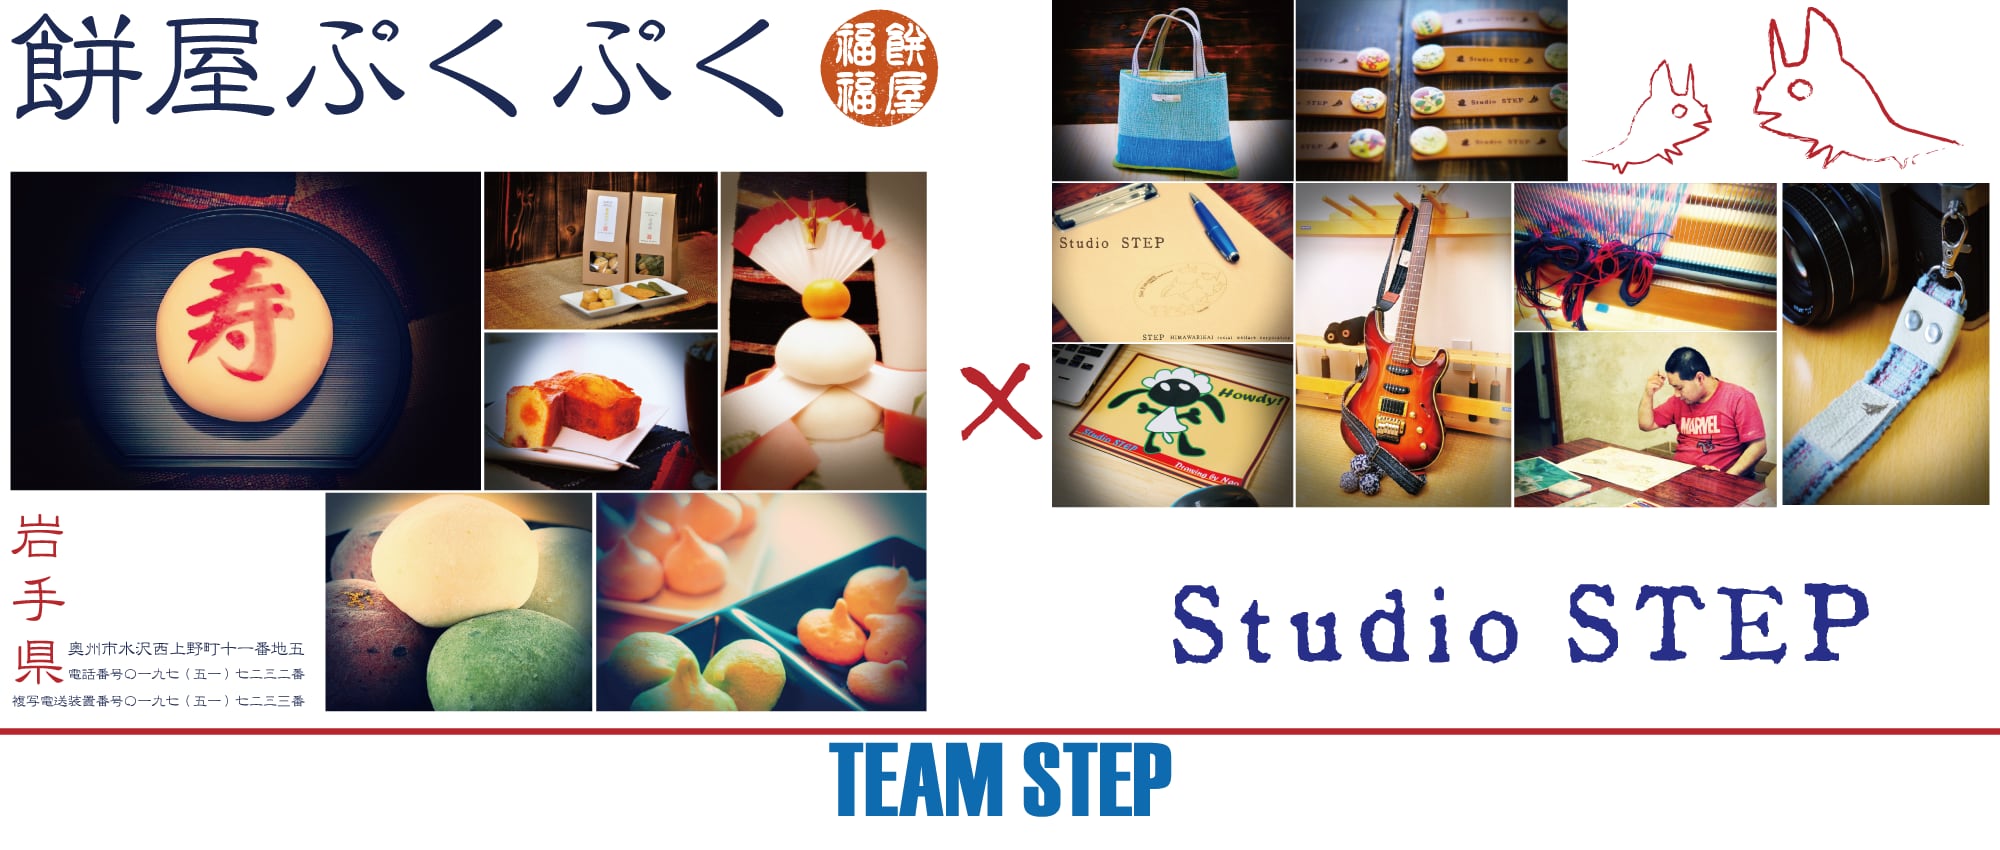 餅屋ぷくぷく × Studio STEP